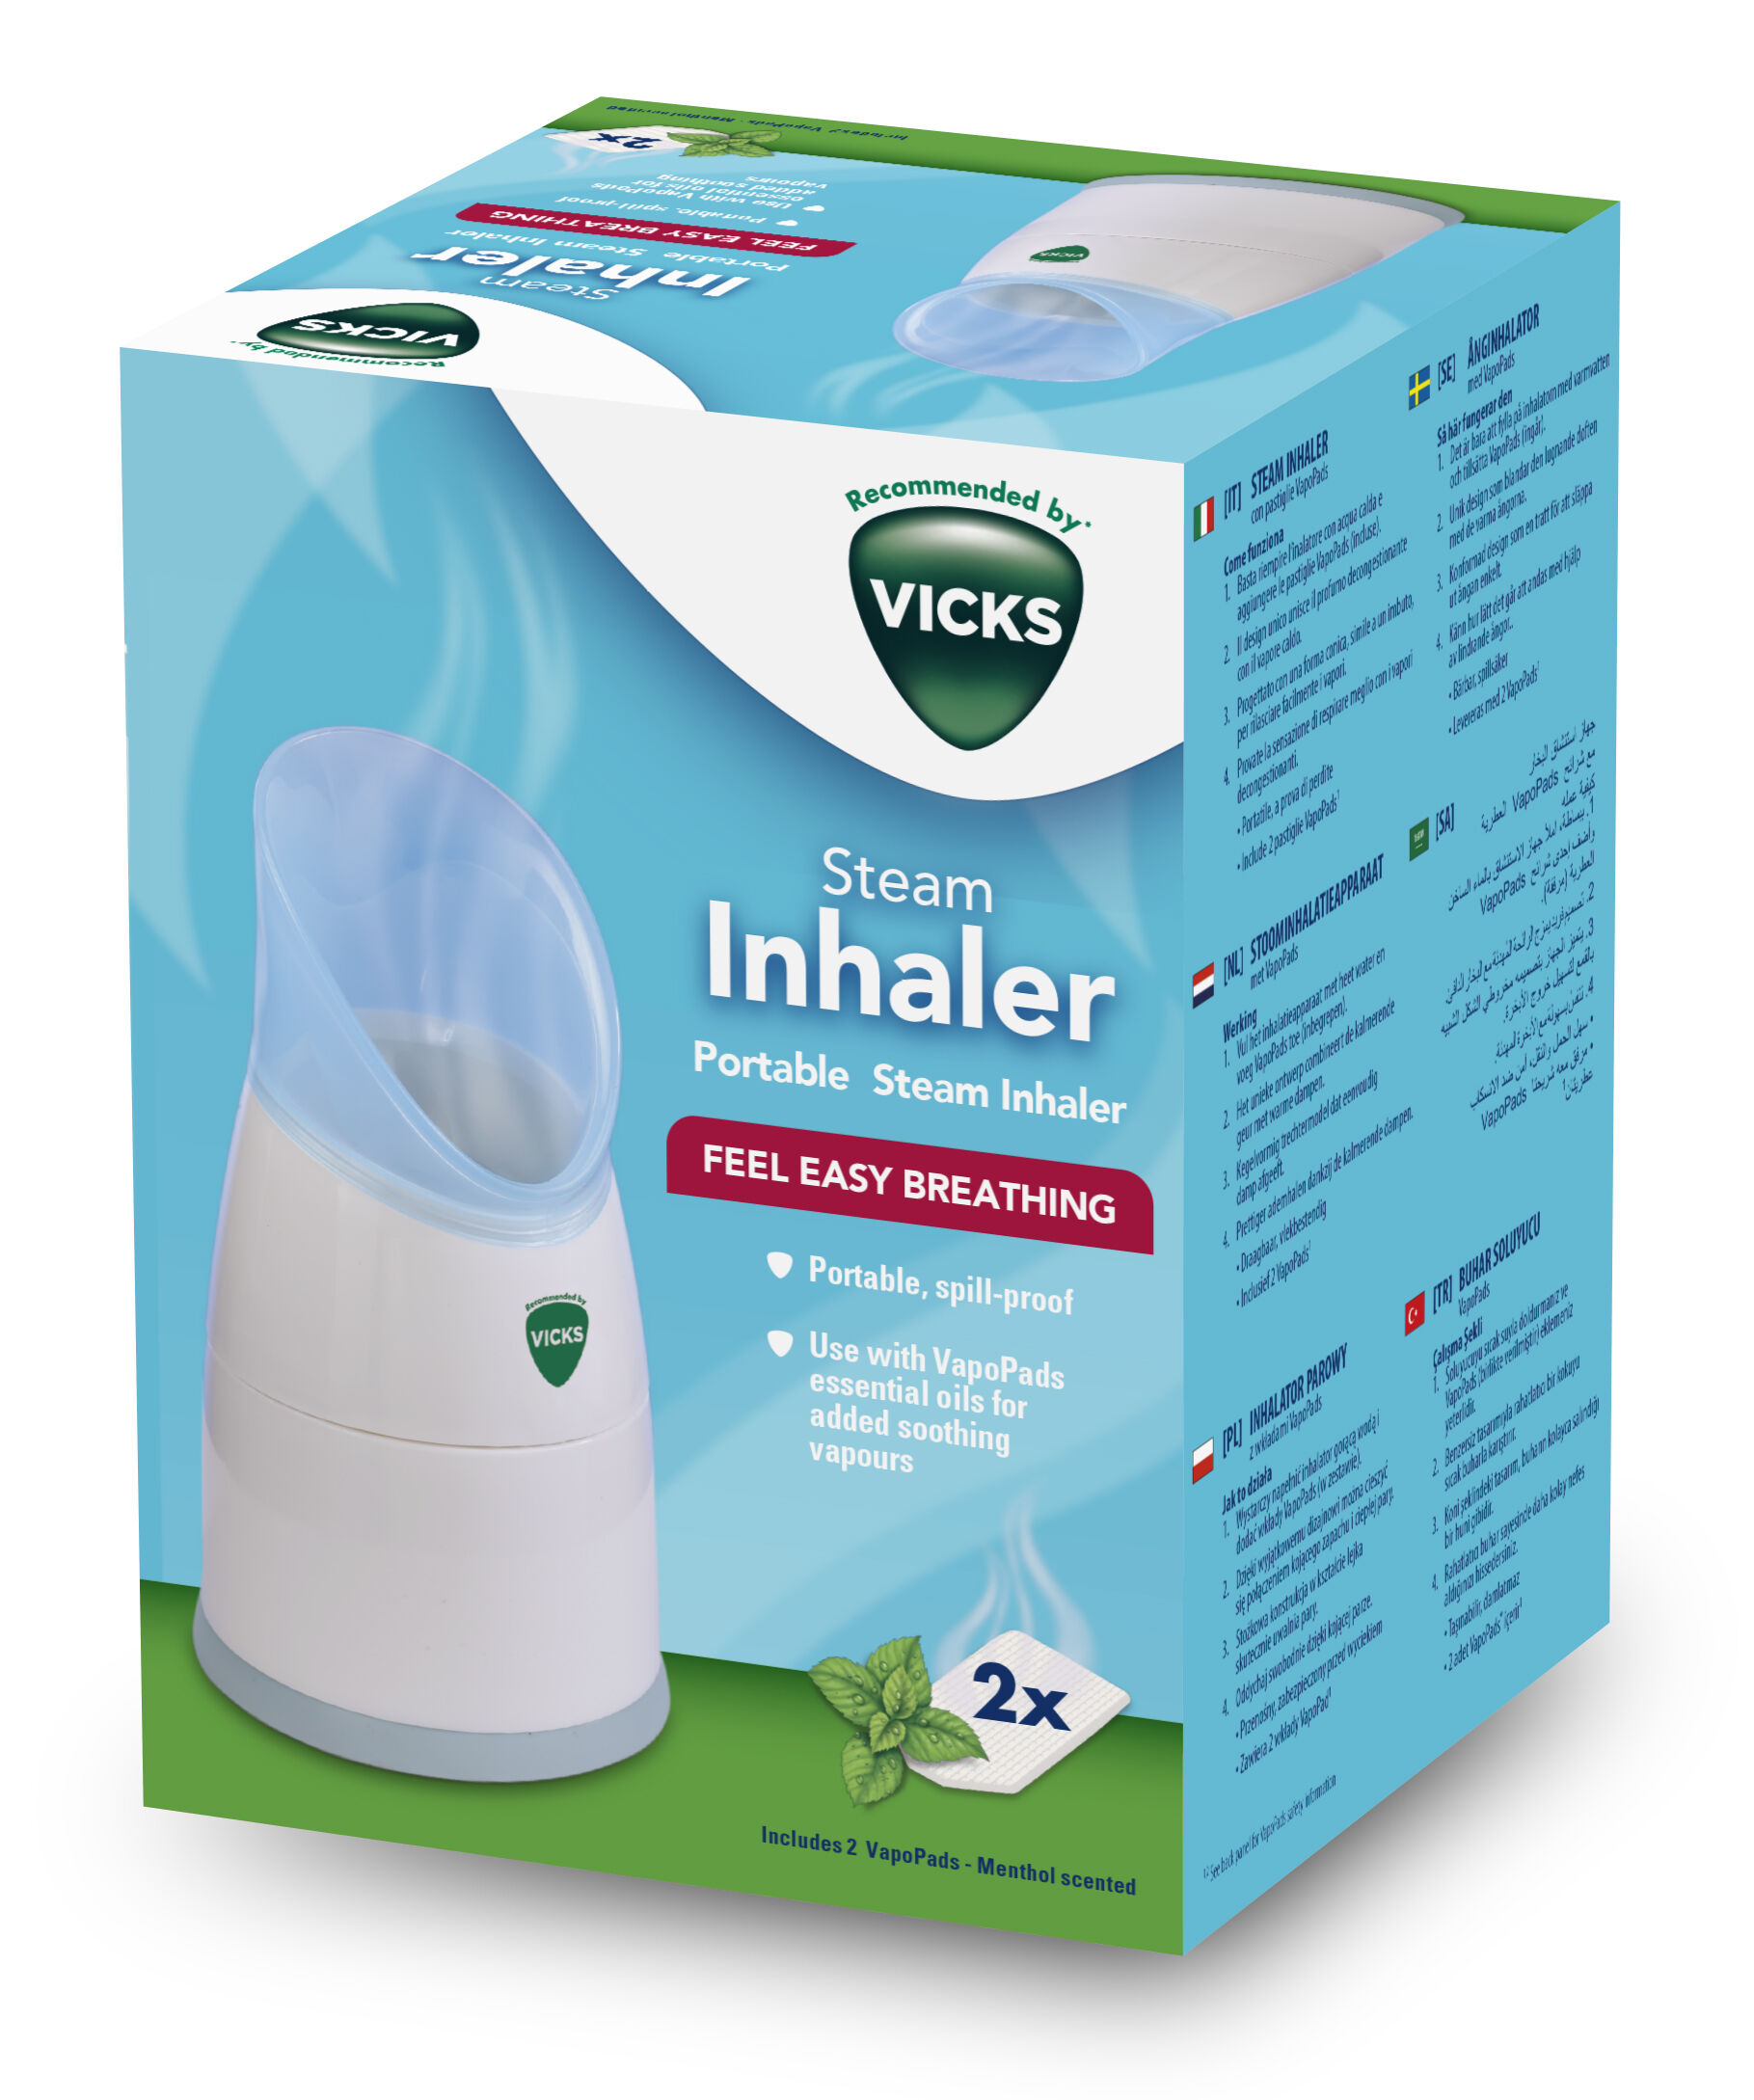 Vicks Inhalateur de vapeur portable - Adapté en cas de toux, rhume et nez  bouché - Compact - Facile à utiliser - Portable - Passe au lave-vaisselle